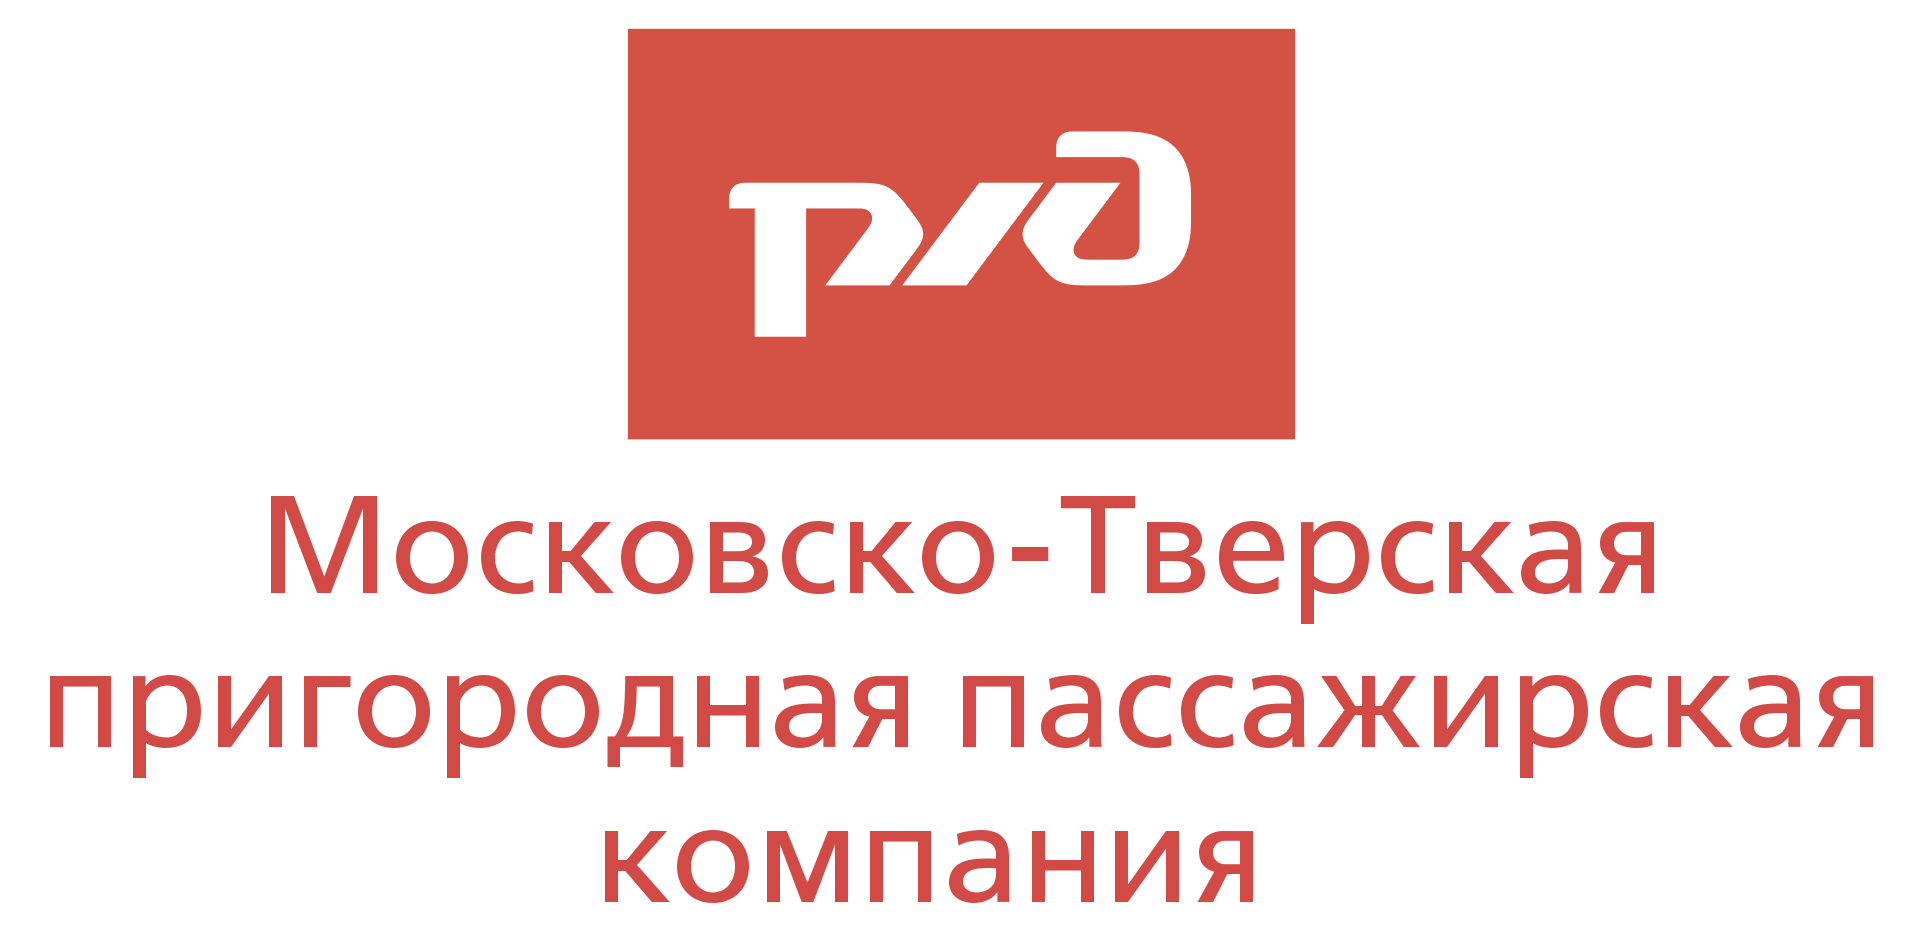 РЖД МТ ППК - Московско-Тверская пригородная пассажирская компания